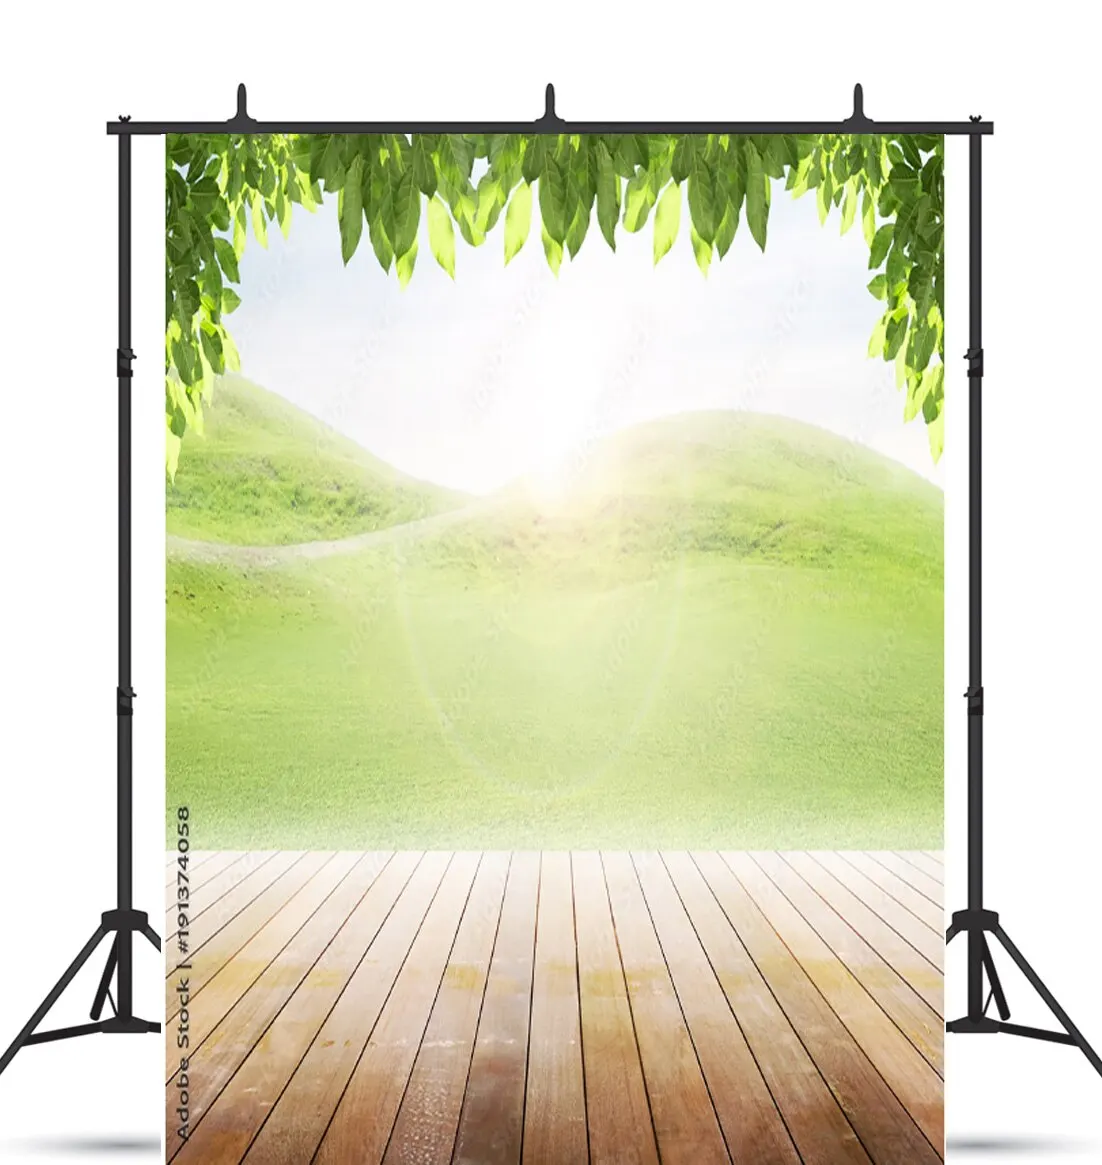 

Художественные тканевые фоны для фотосъемки Искусственный деревянный пол фото студия реквизит 21121 пейзаж с цветком